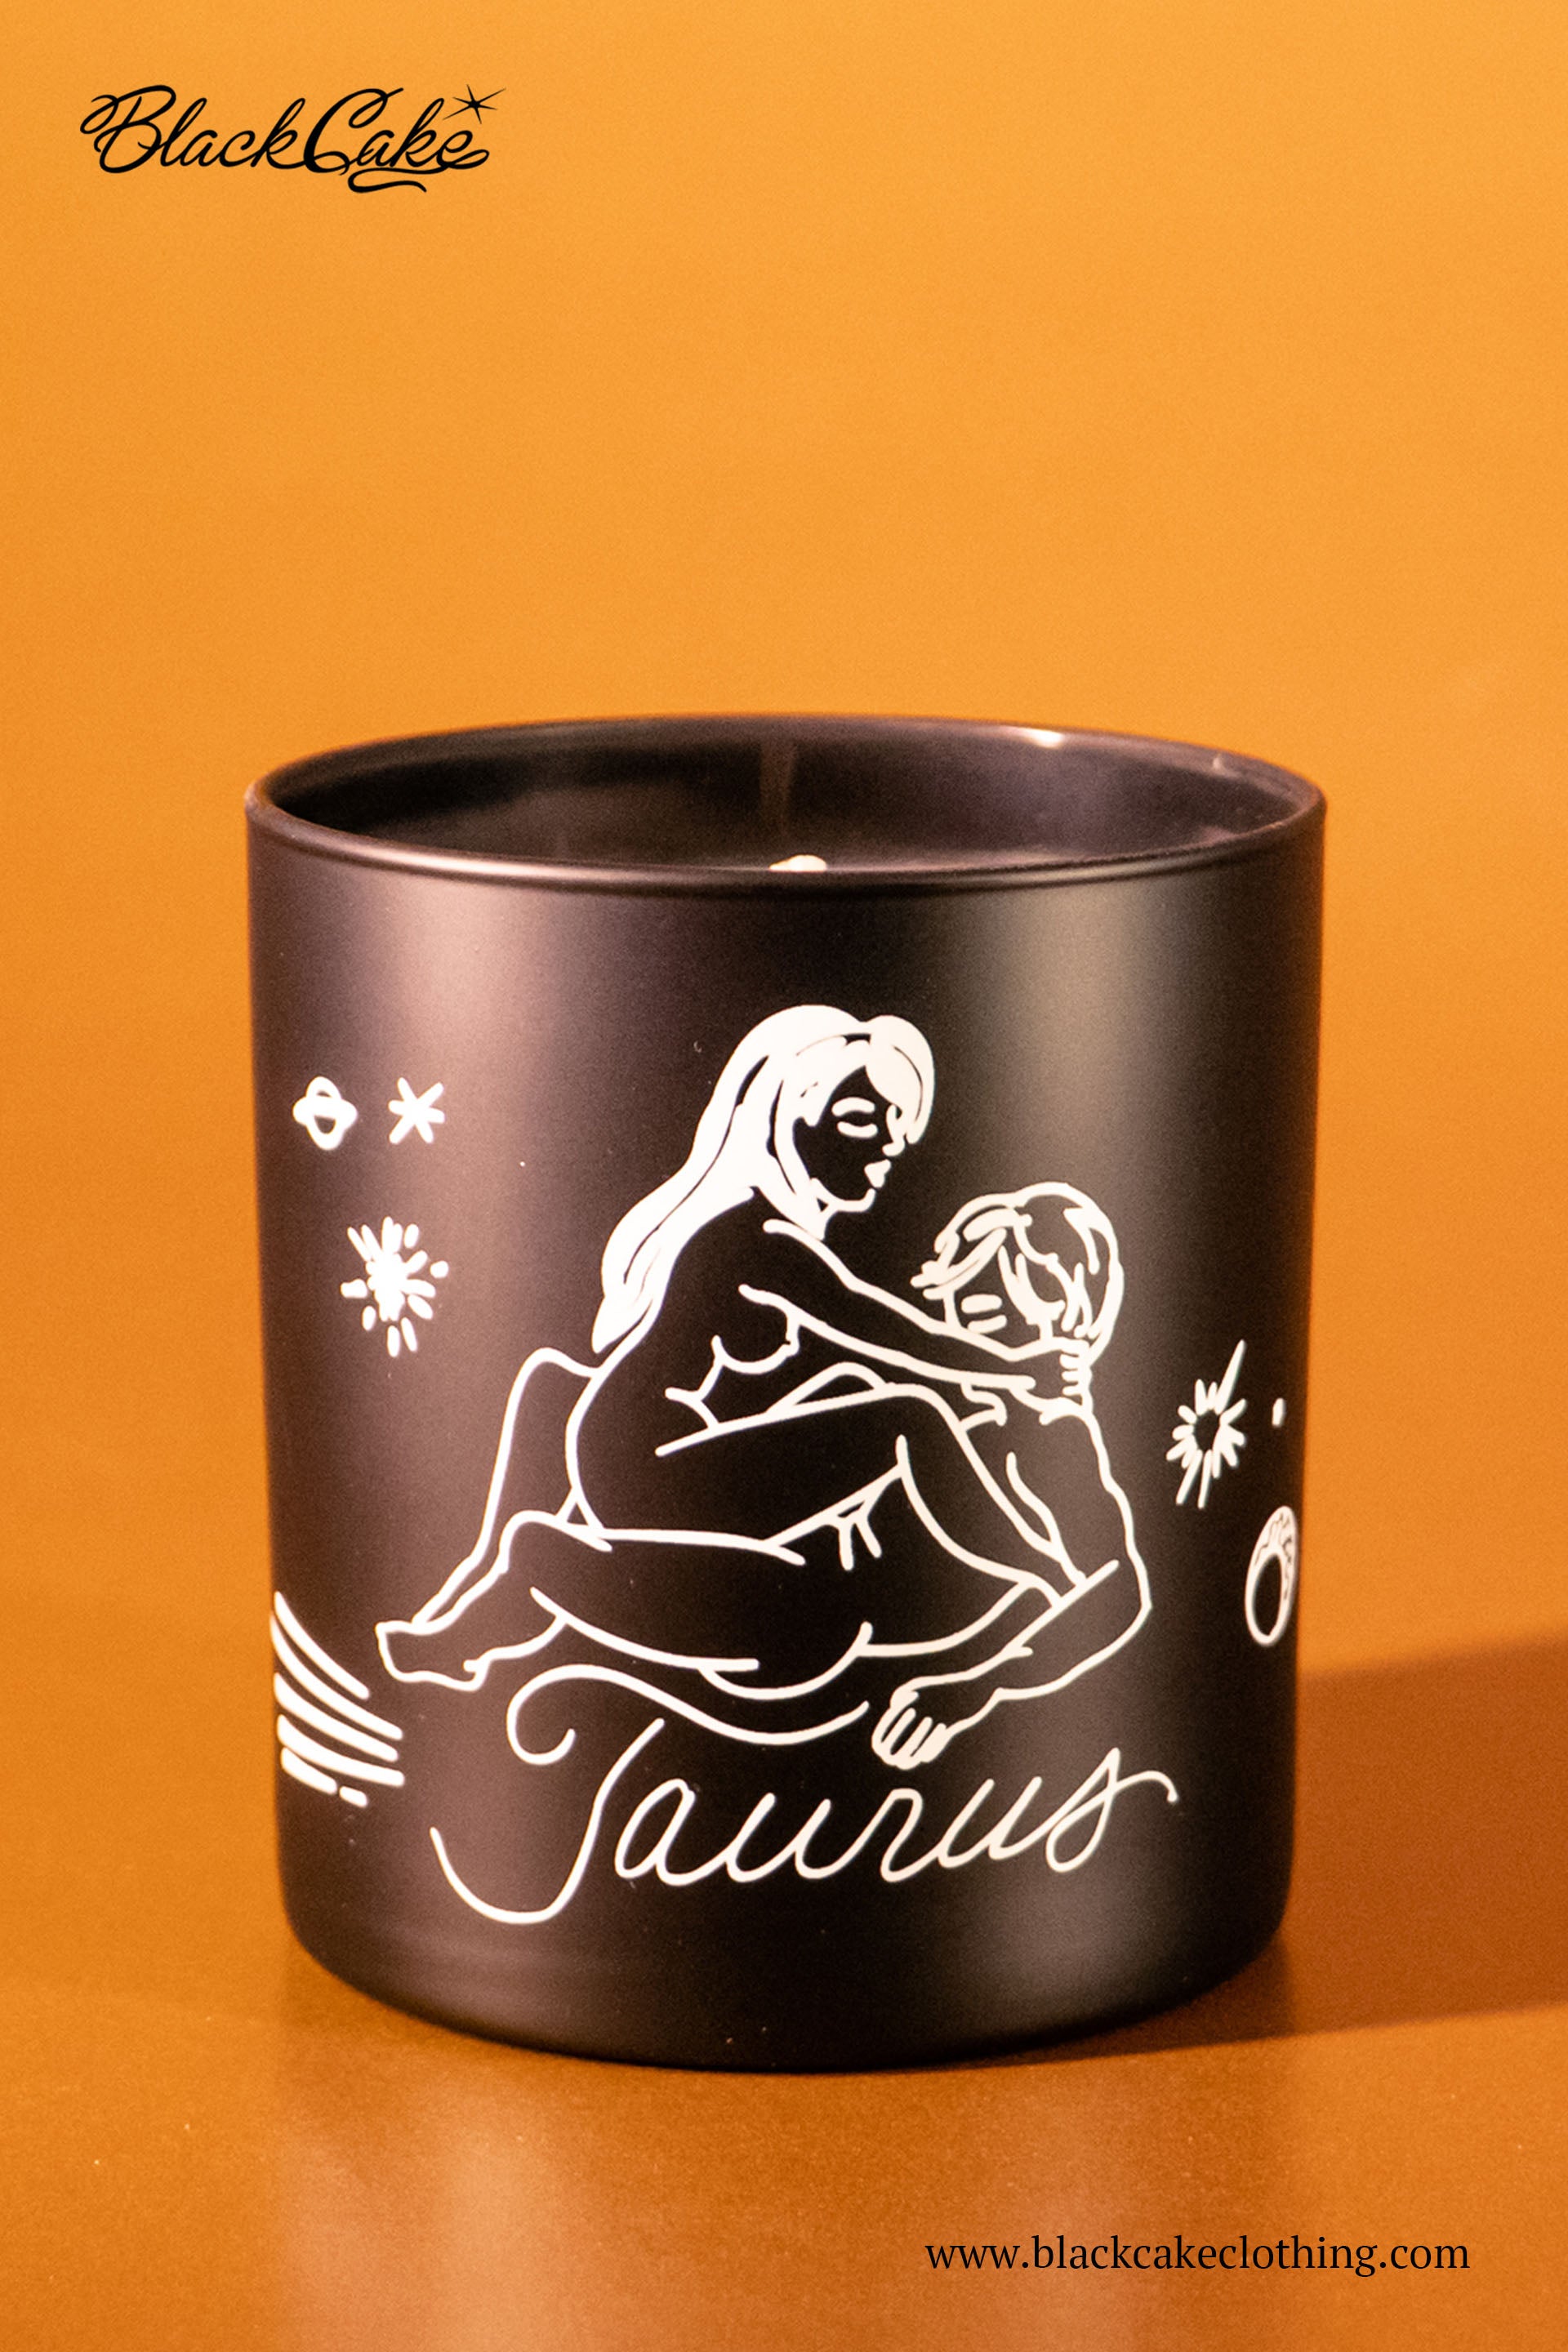 Taurus Zodiac Horoscope Massage Candle